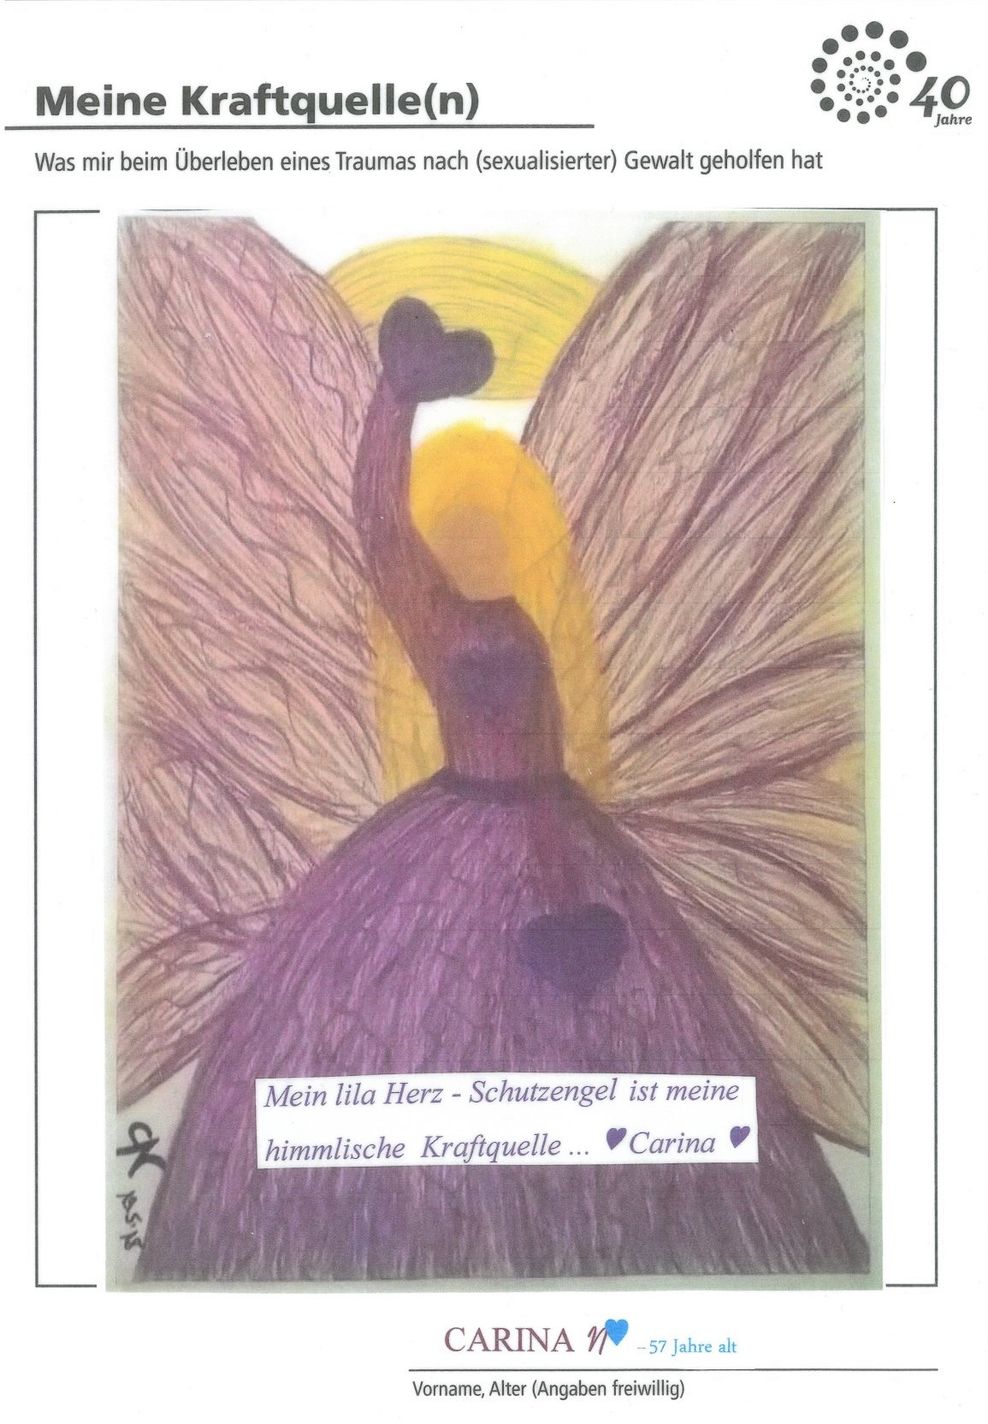 Eines der Werke, die in der Ausstellung „Meine Kraftquelle(n)“ zu sehen sind. Es zeigt einen lilafarbenen Schutzengel mit der Unterschrift „Mein lila Herz-Schutzengel ist meine himmlische Kraftquelle“.